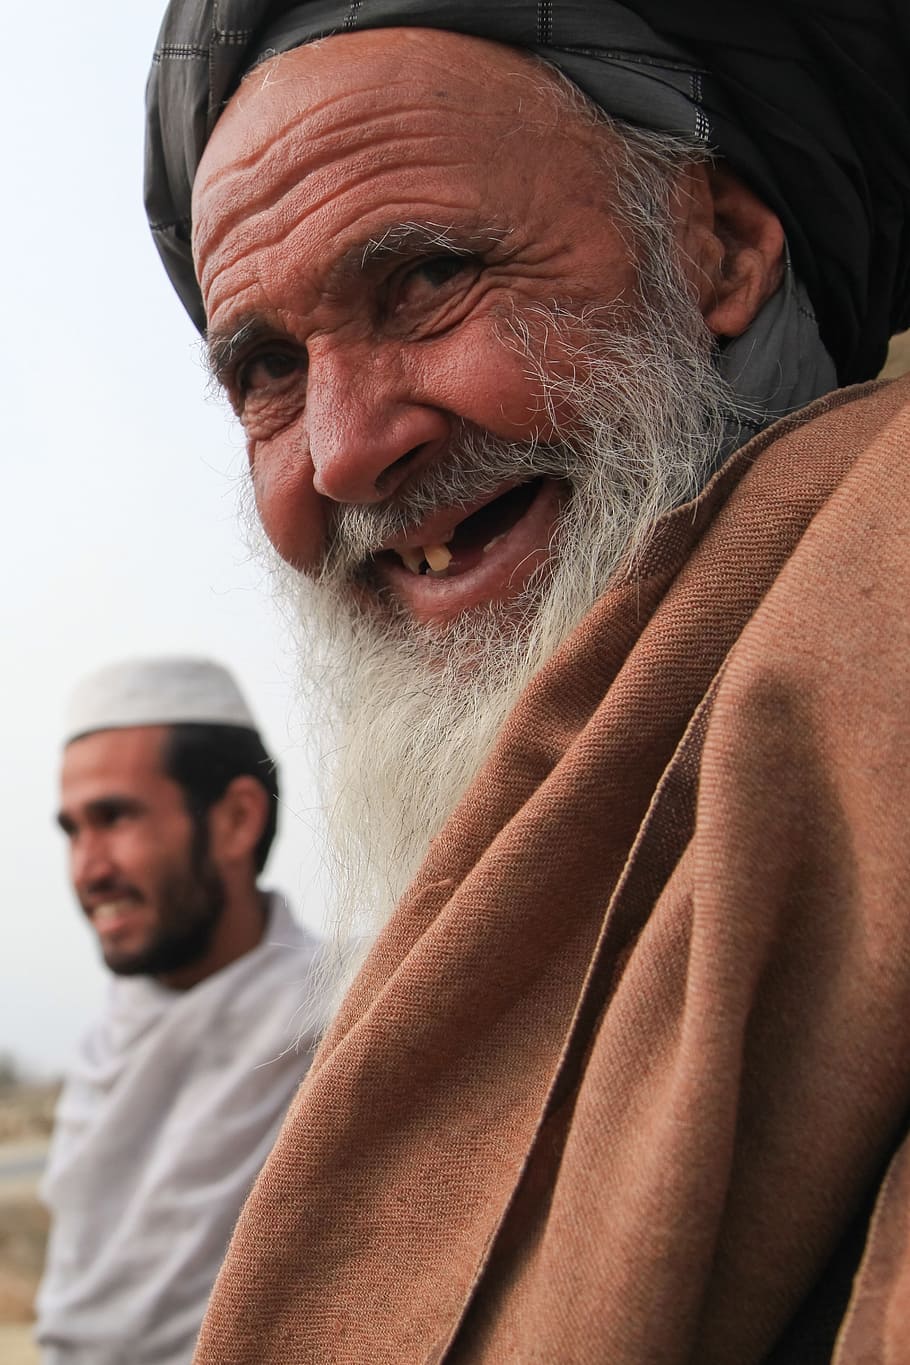 smiling man beside man wearing white headwear closeup photo, old